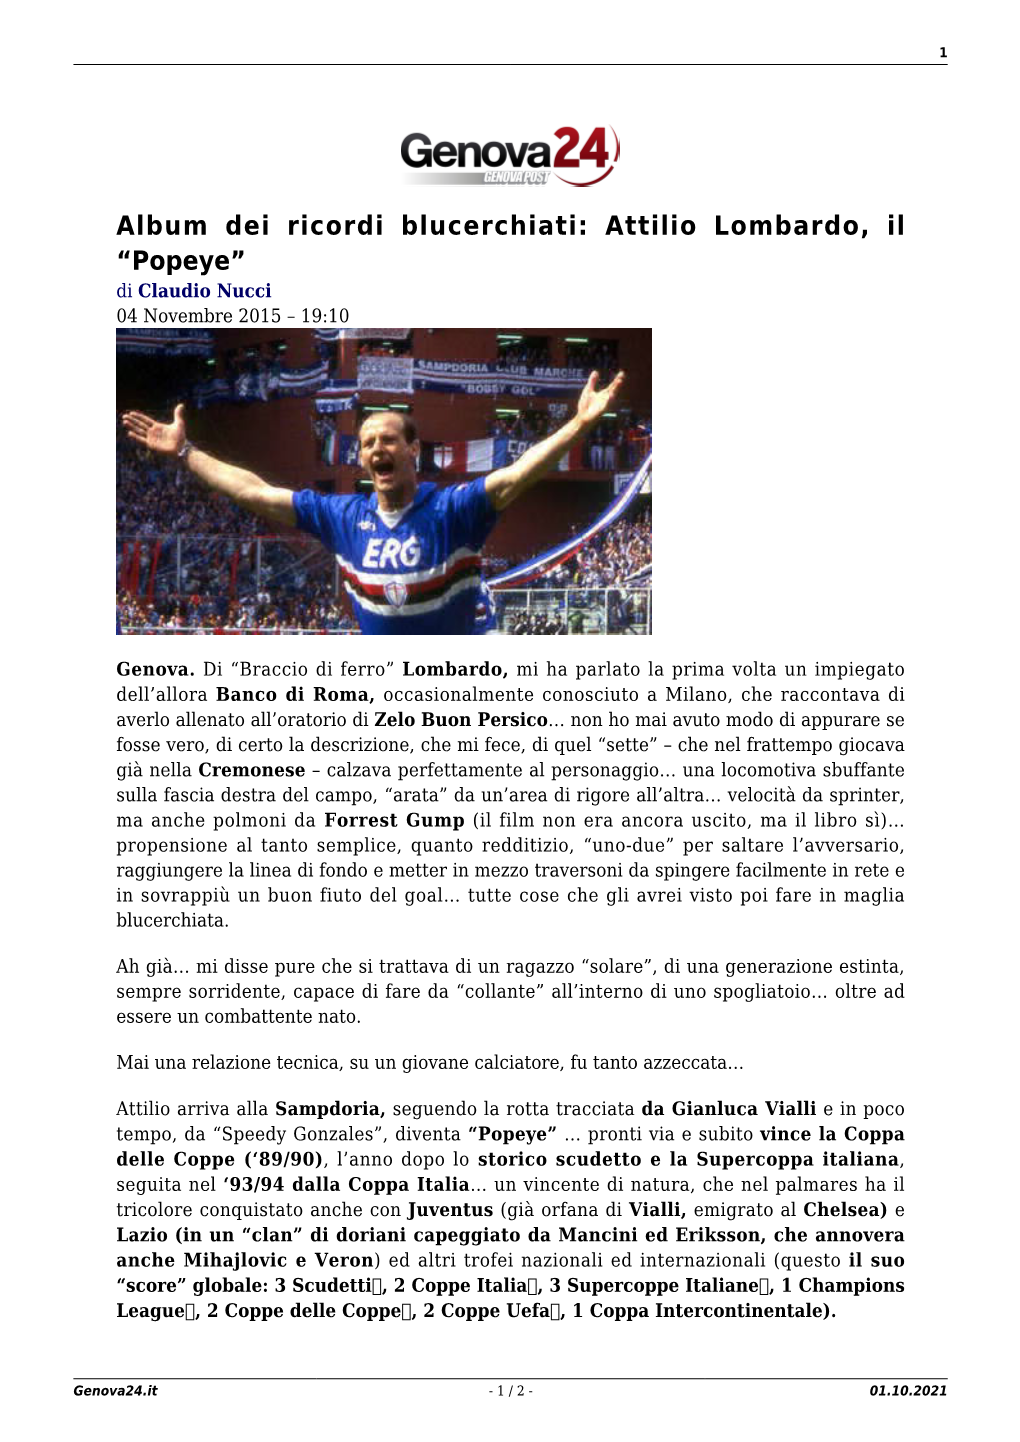 Attilio Lombardo, Il “Popeye” Di Claudio Nucci 04 Novembre 2015 – 19:10